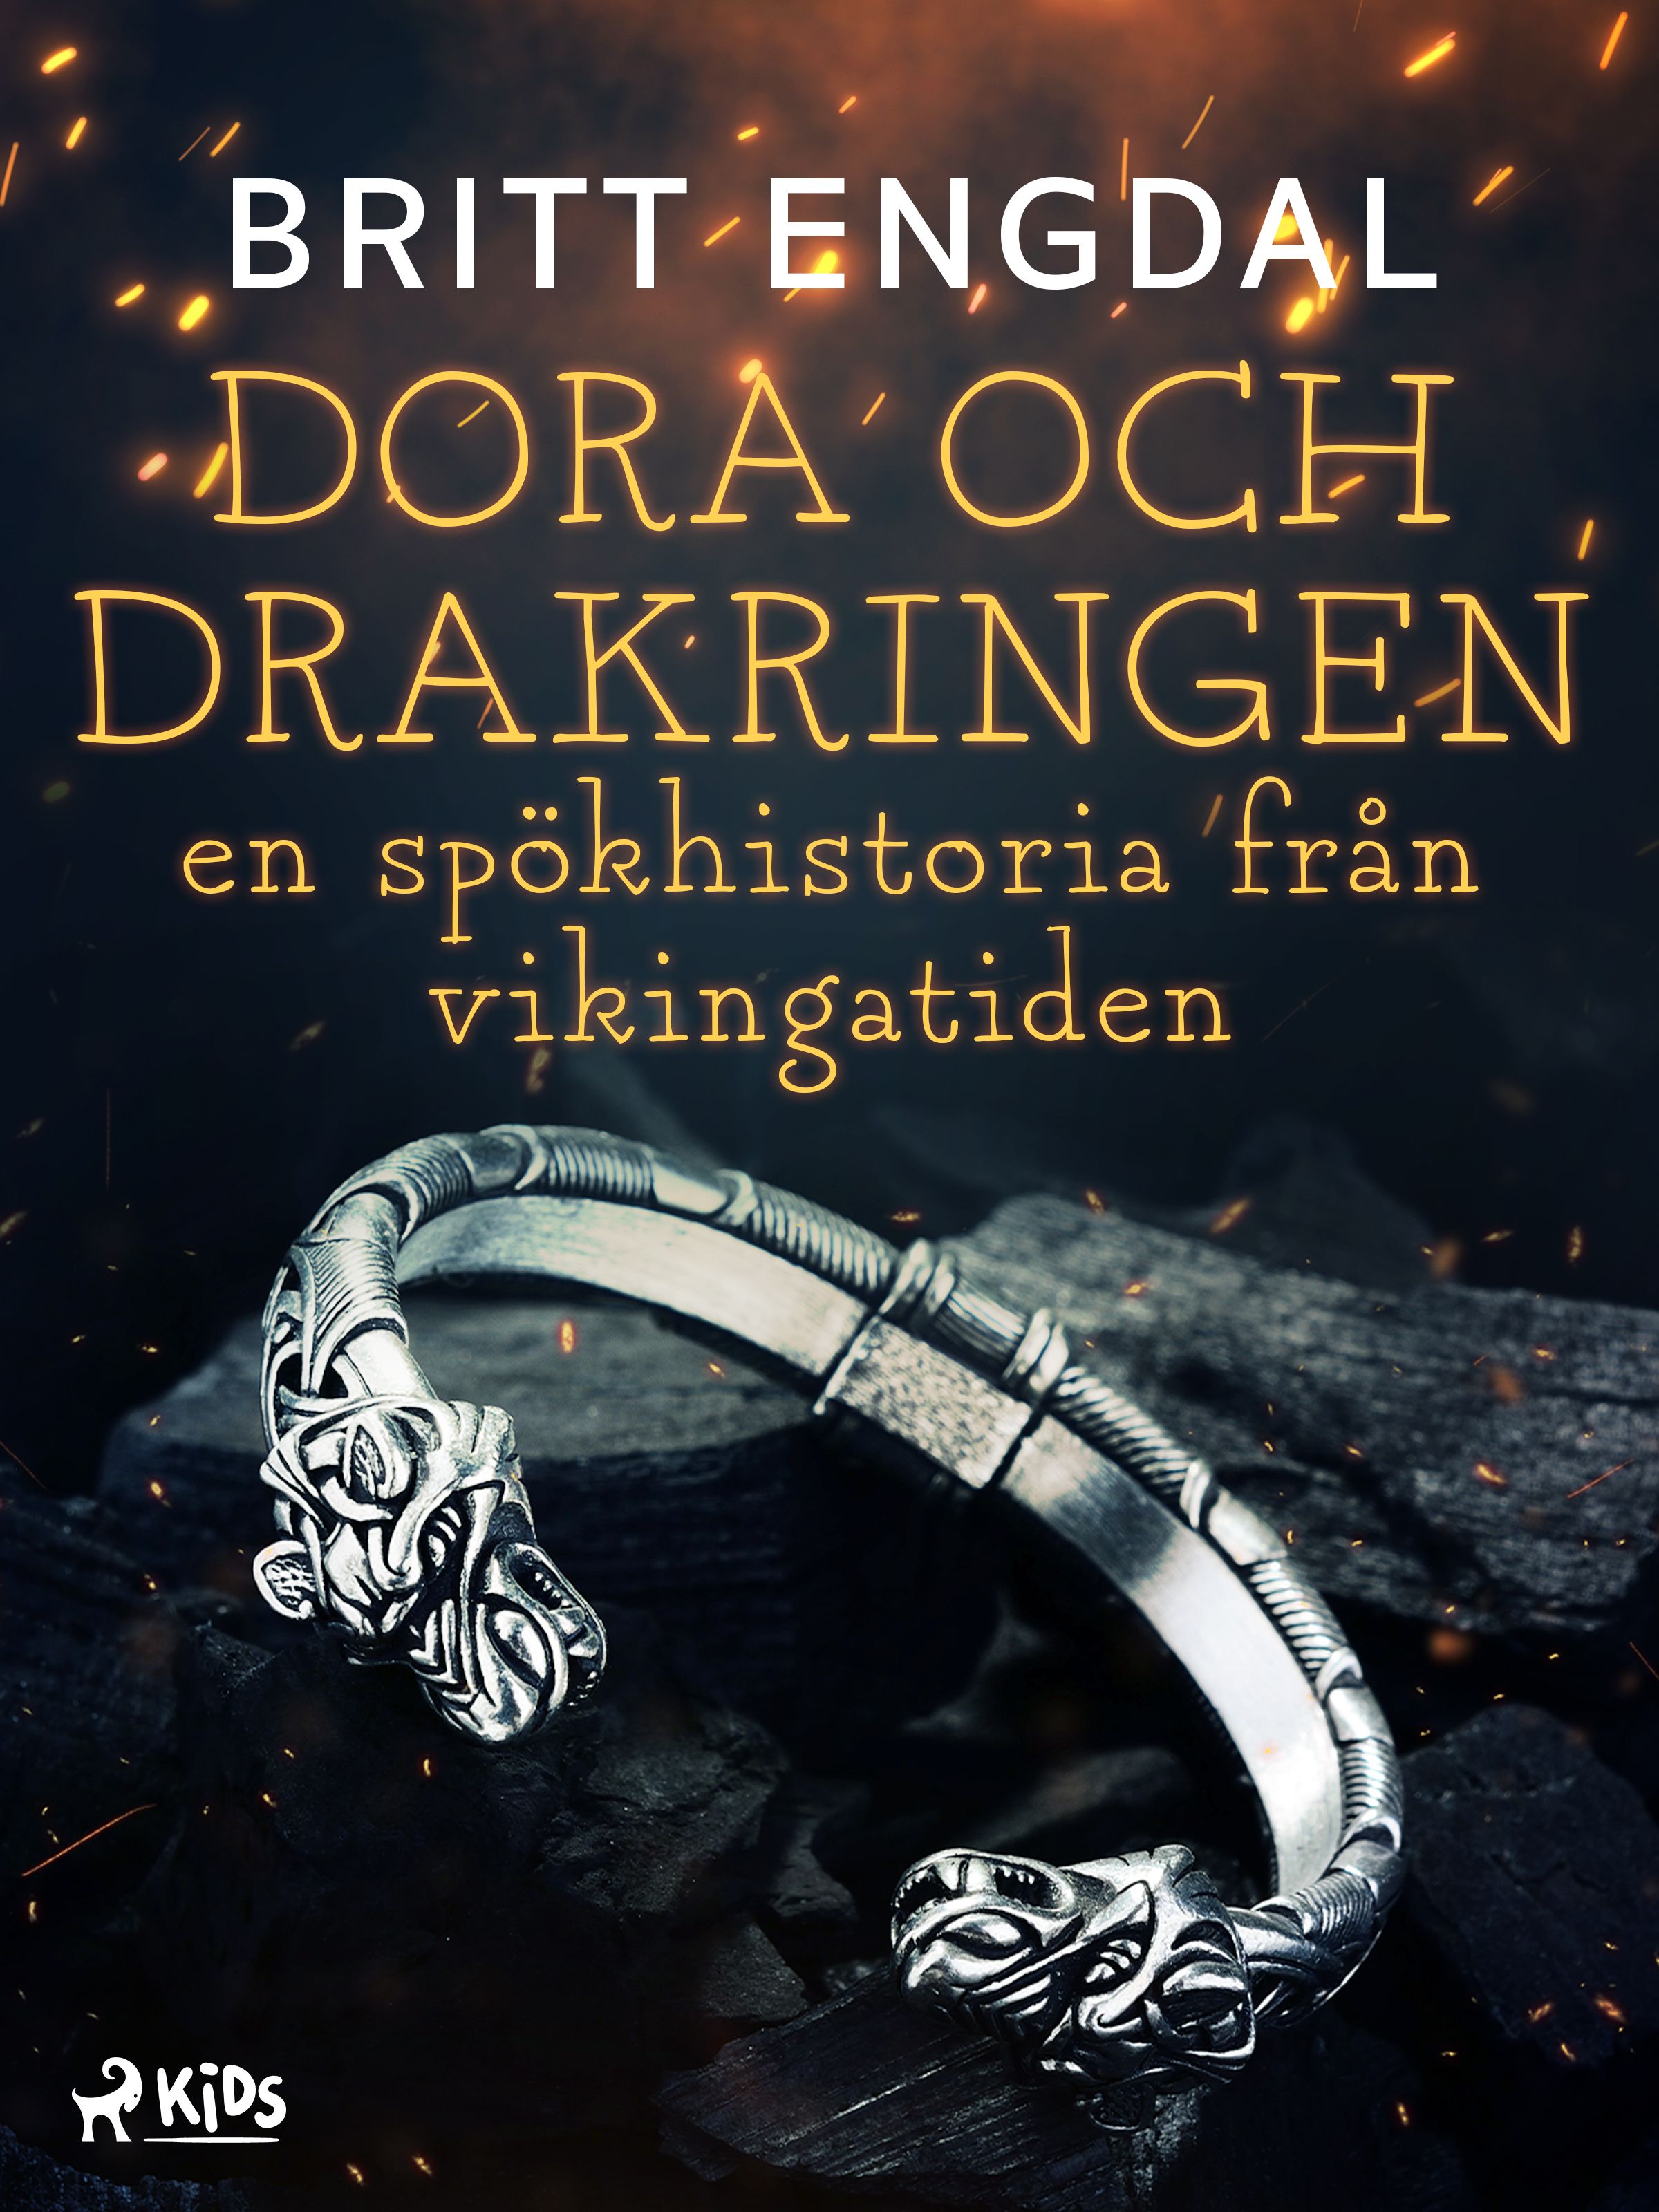 Dora och drakringen: en spökhistoria från vikingatiden, e-bok av Britt Engdal